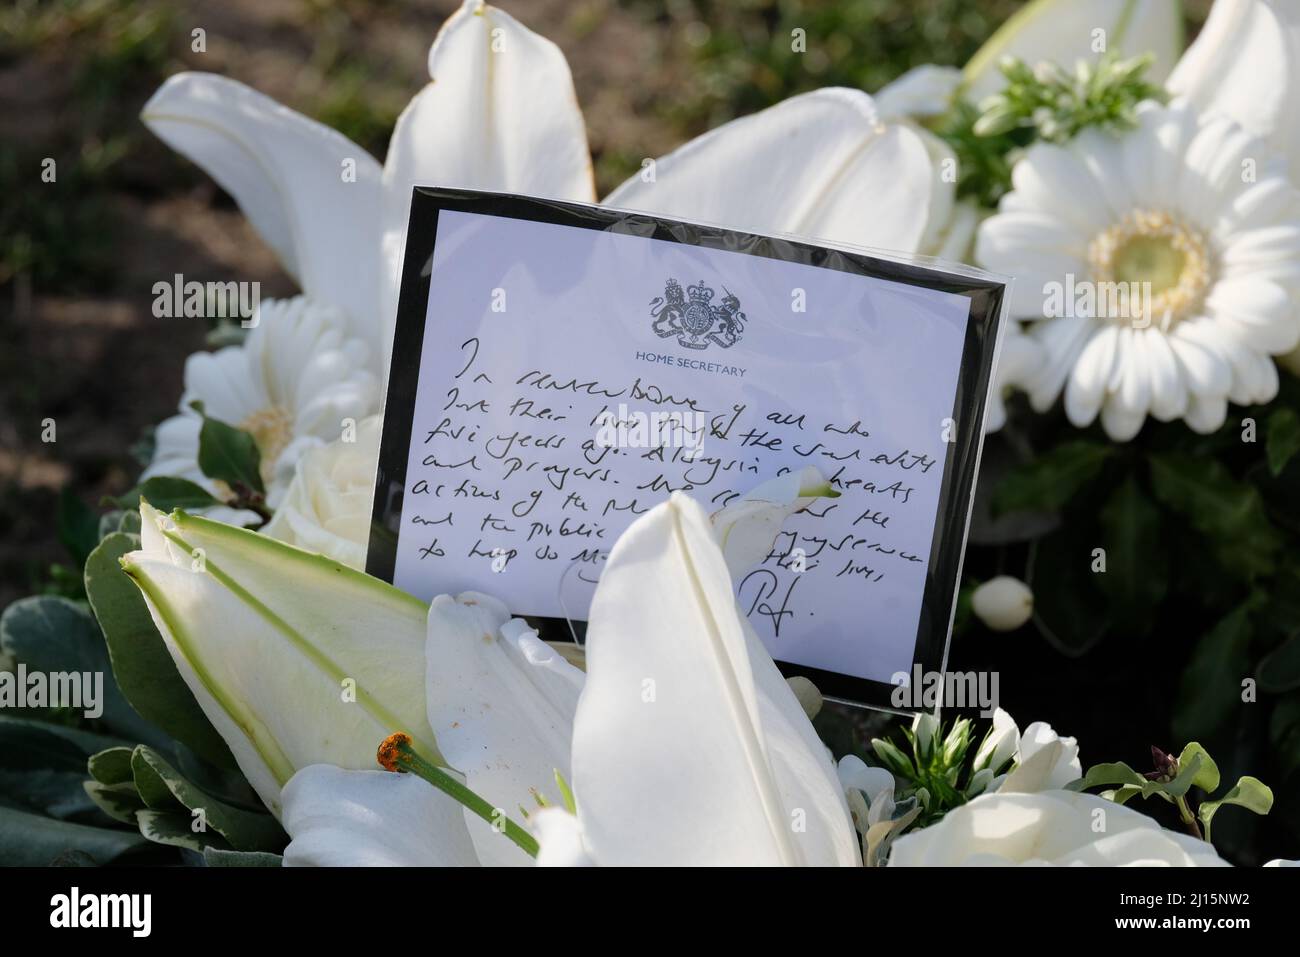 Londra, Regno Unito. Un messaggio tributo floreale scritto dal Segretario di Stato Priti Patel che ricorda le vittime dell'attacco terroristico di Wesminster del 2017. Foto Stock